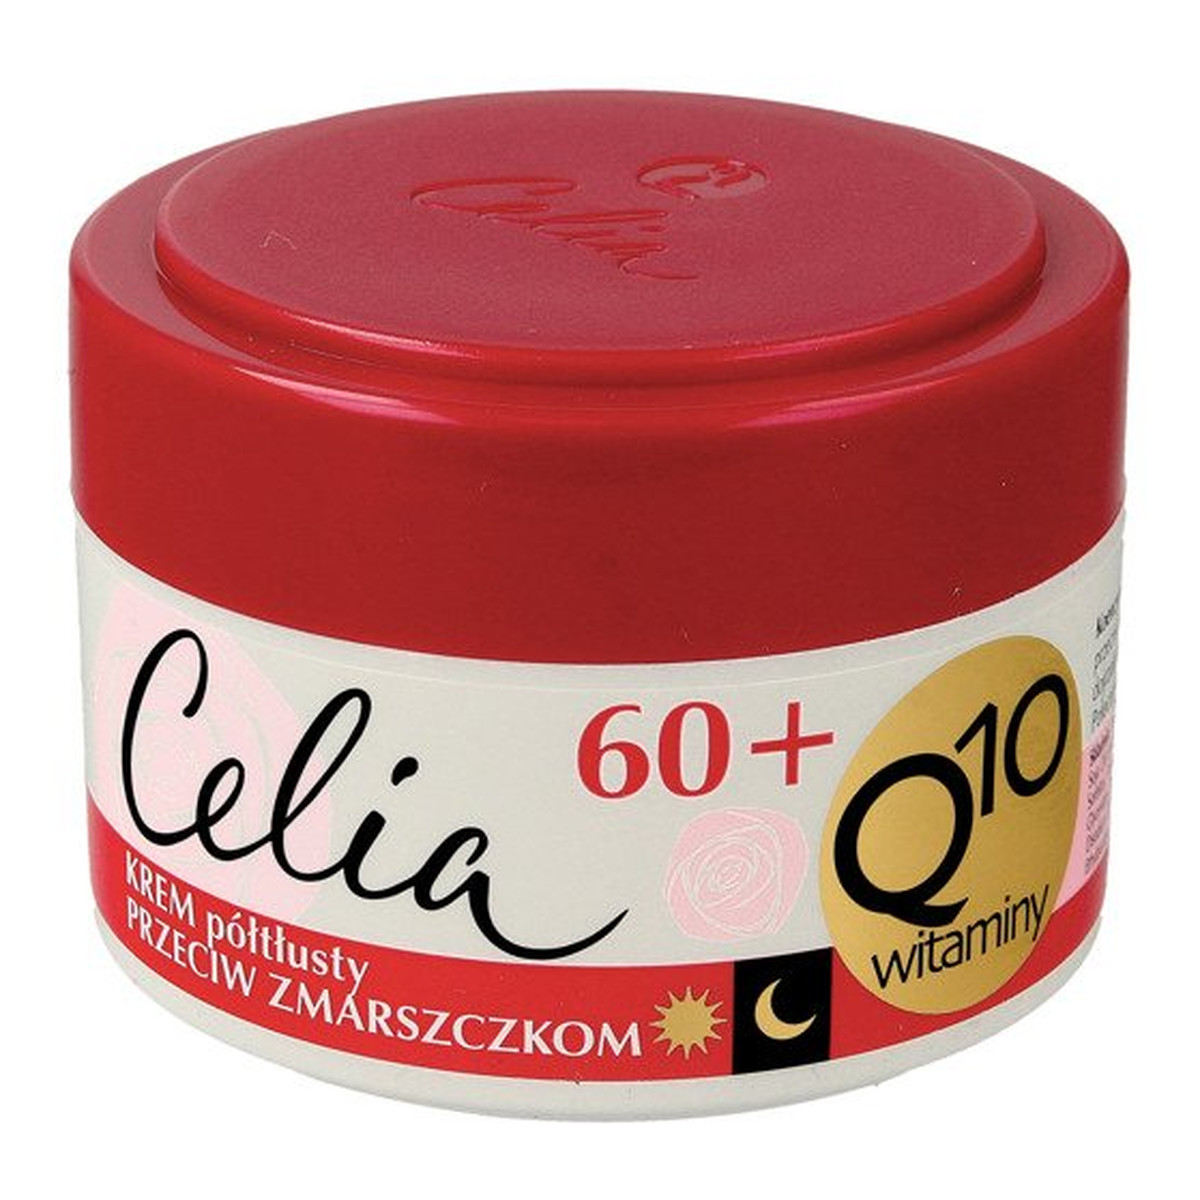 Celia Q10 Witaminy 60+ krem półtłusty przeciw zmarszczkom z kolagenem na dzień i noc 50ml